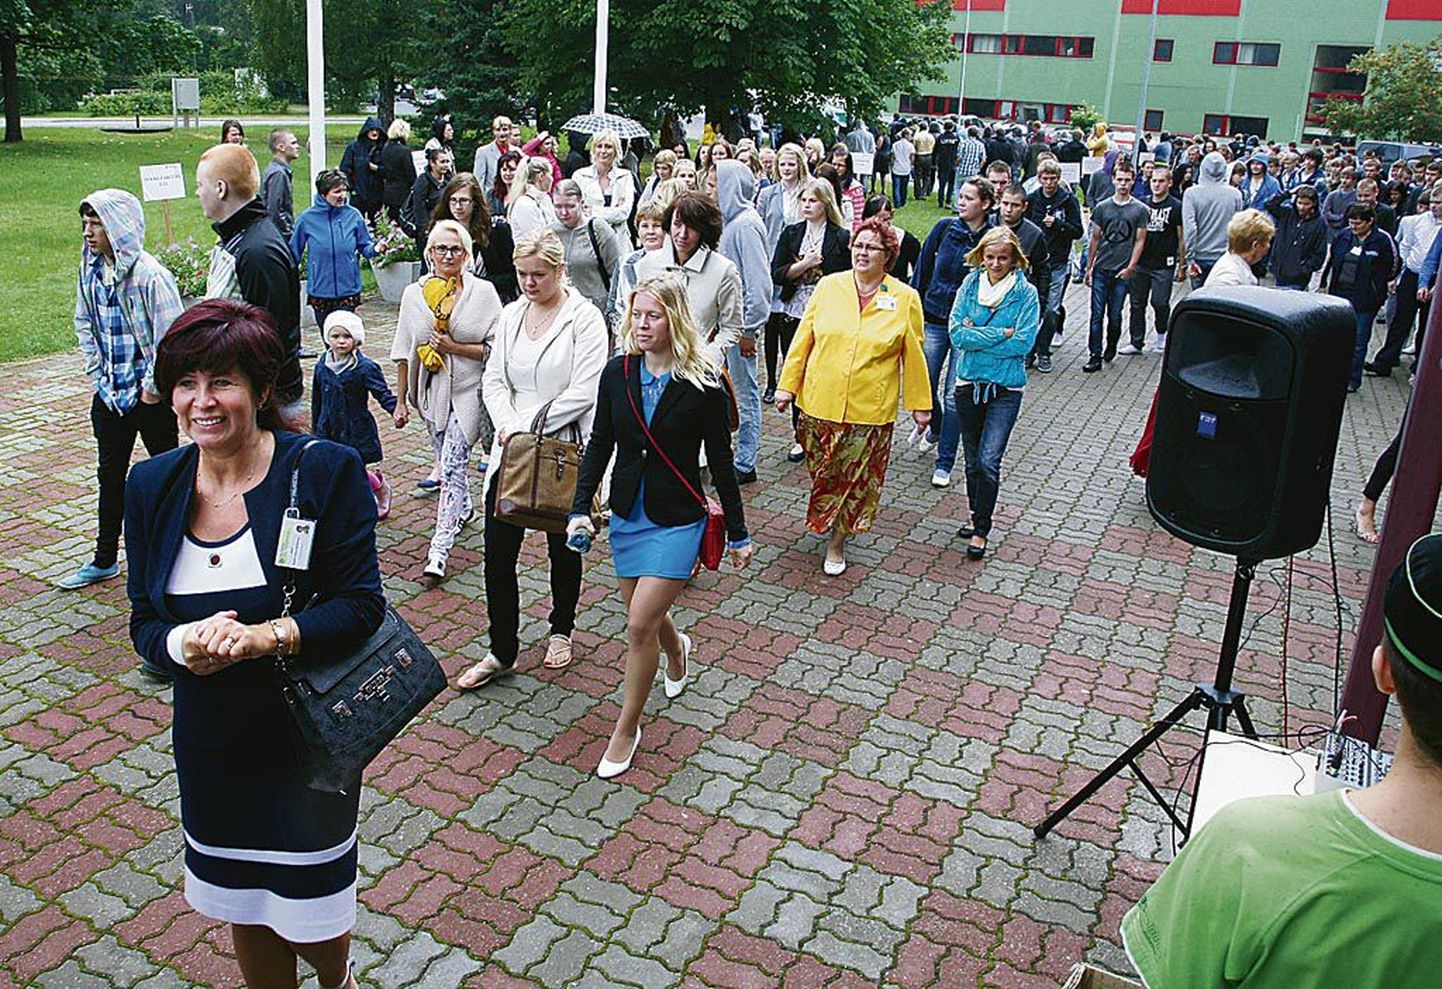 Eile avaaktust pidanud kutsehariduskeskuses on ees juubelihõnguline aasta, sest täitumas on 100 aastat kutsehariduse andmise algusest Pärnumaal.